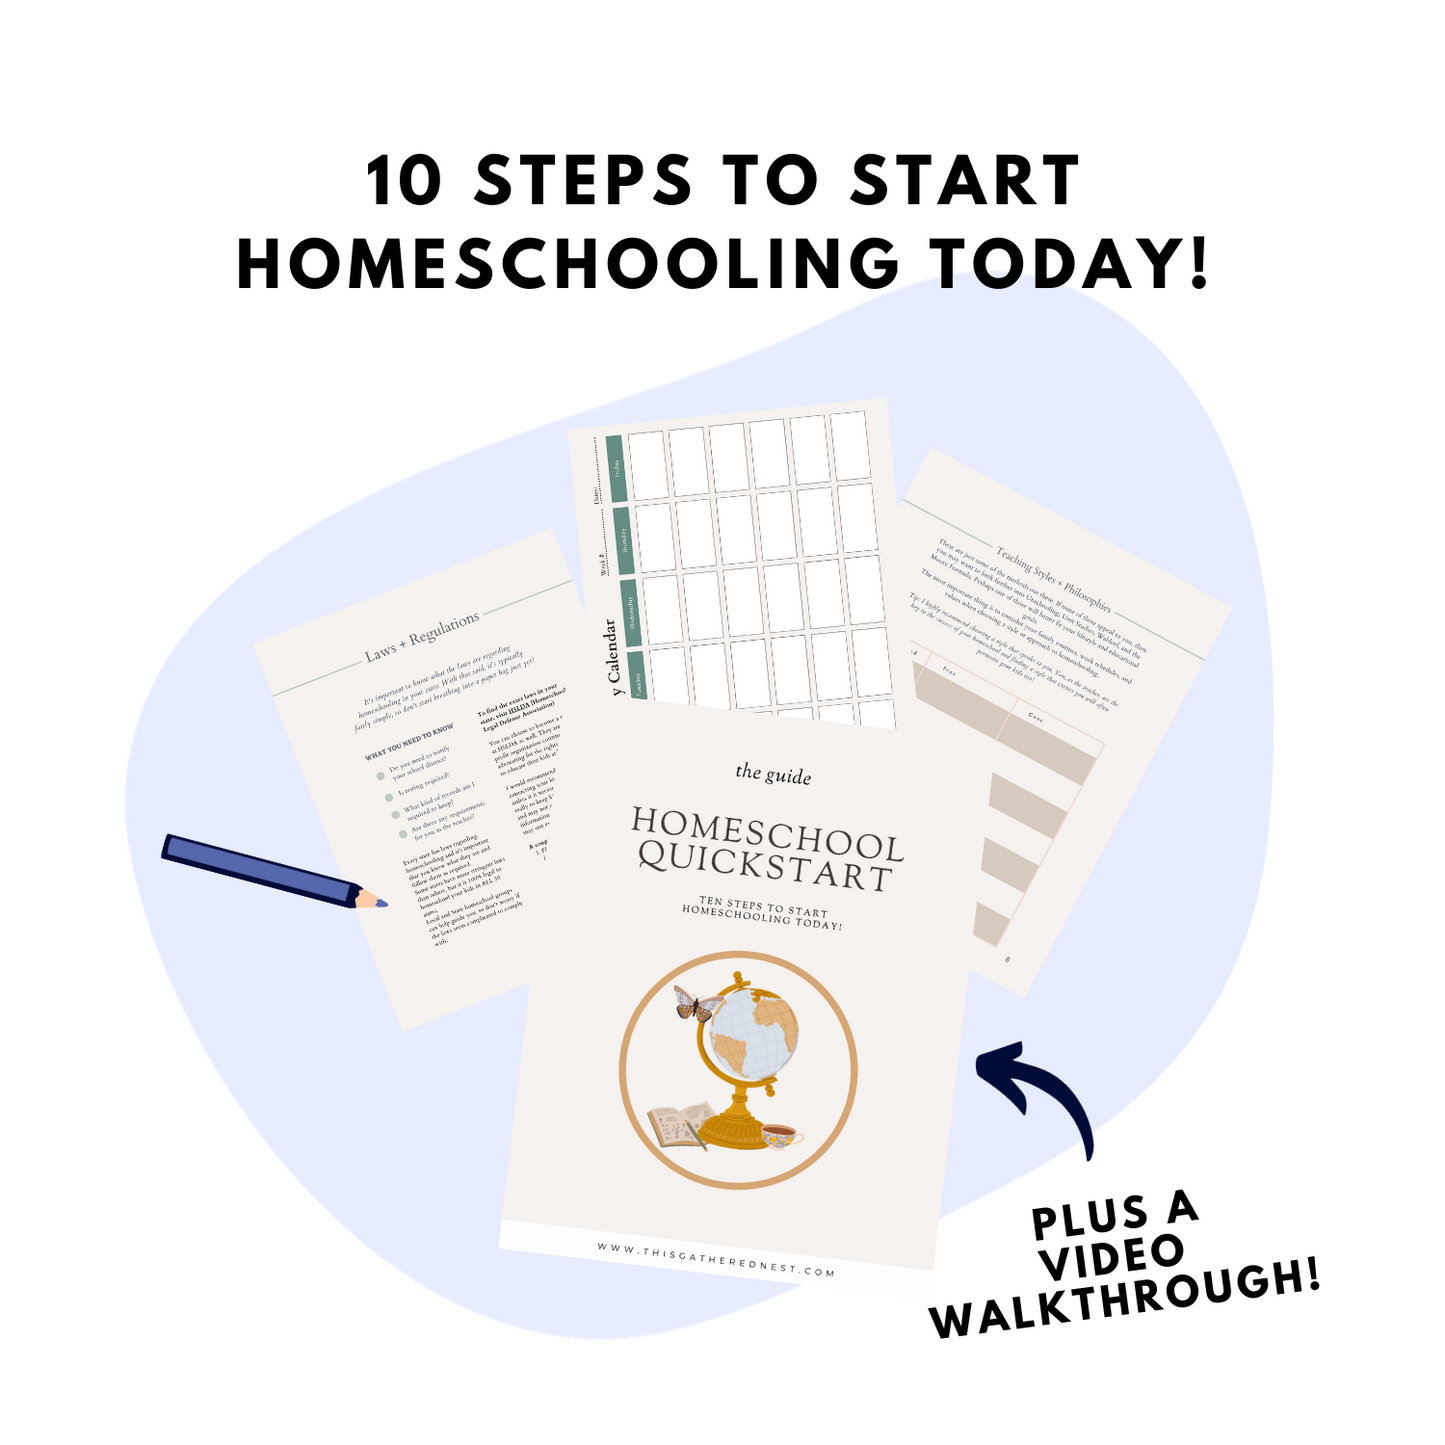 The Homeschool Quickstart Guide